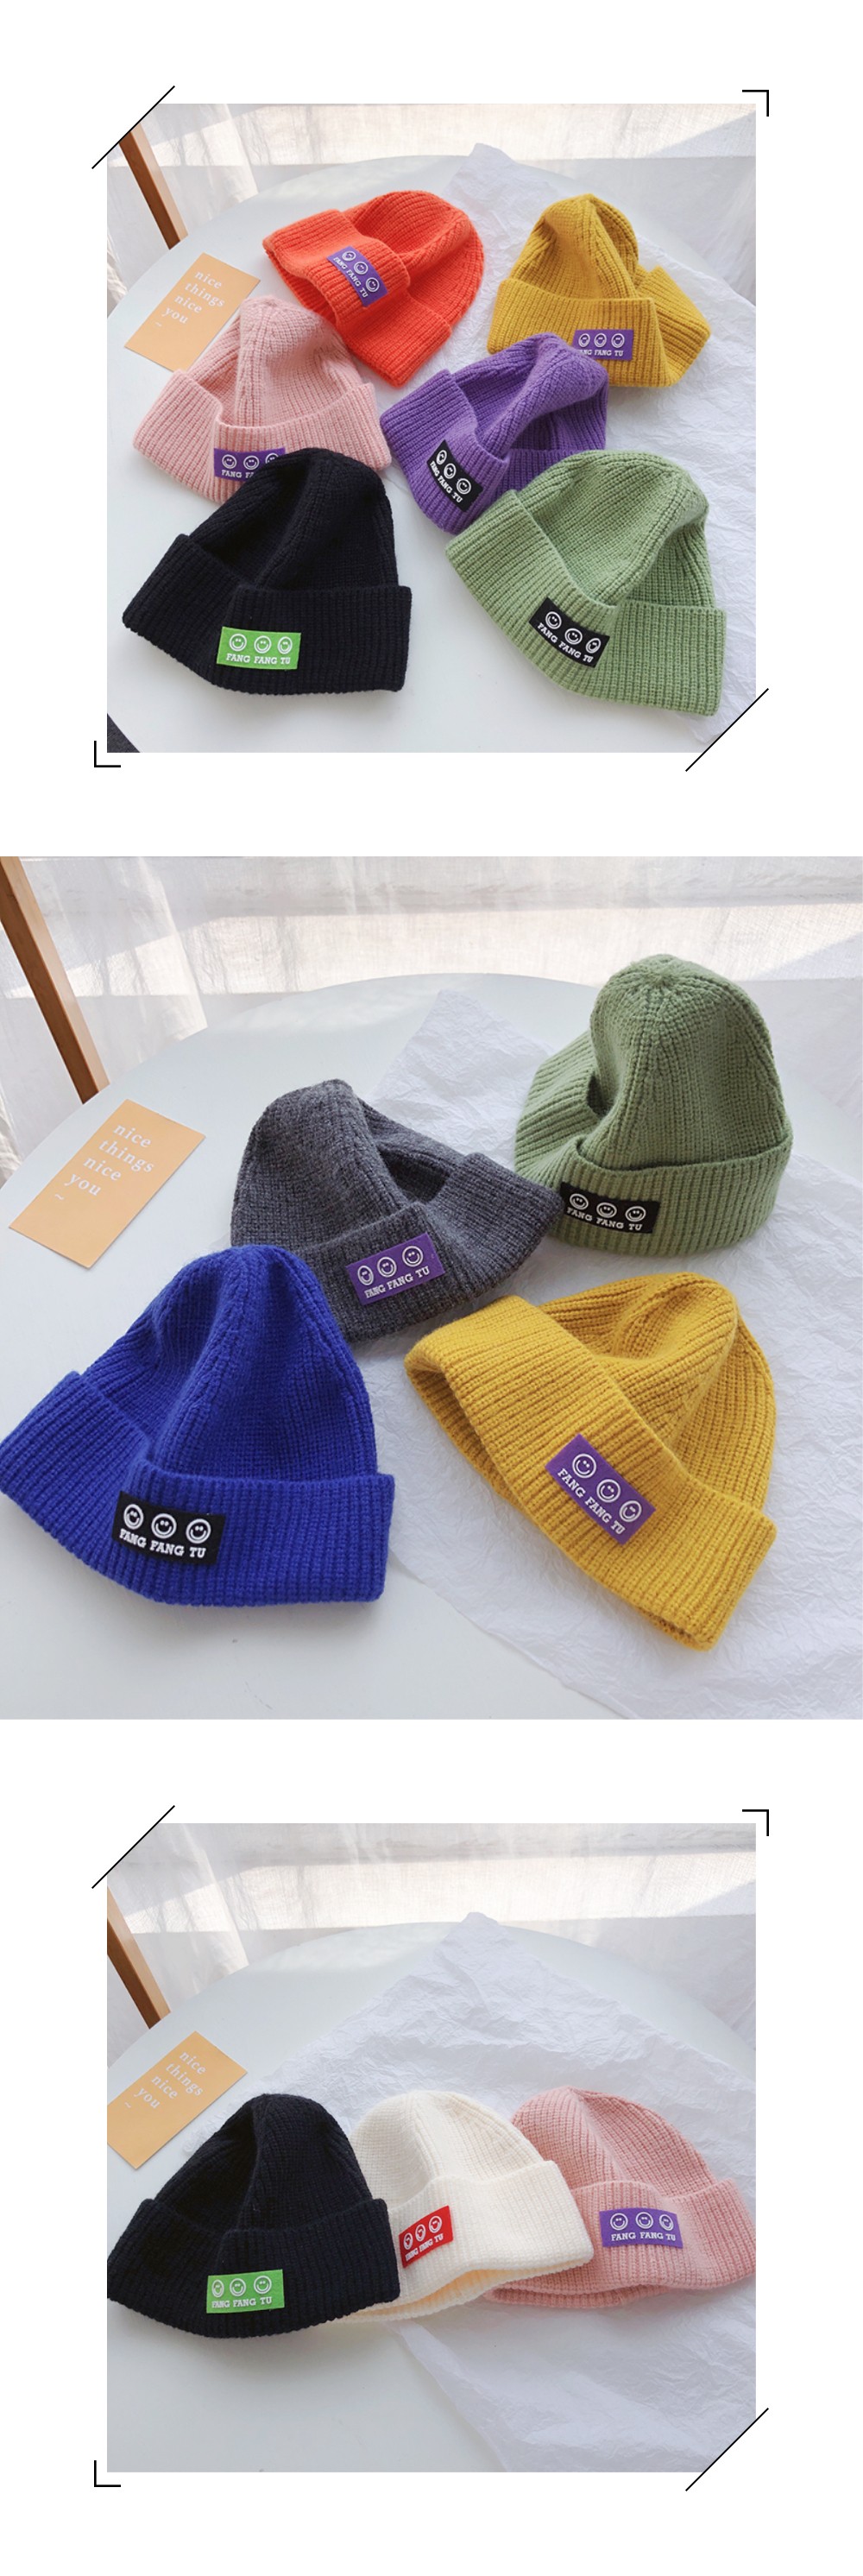 2021年新款秋冬季韩版针织帽儿童三个笑脸贴标纯色个性休闲毛线帽详情图5